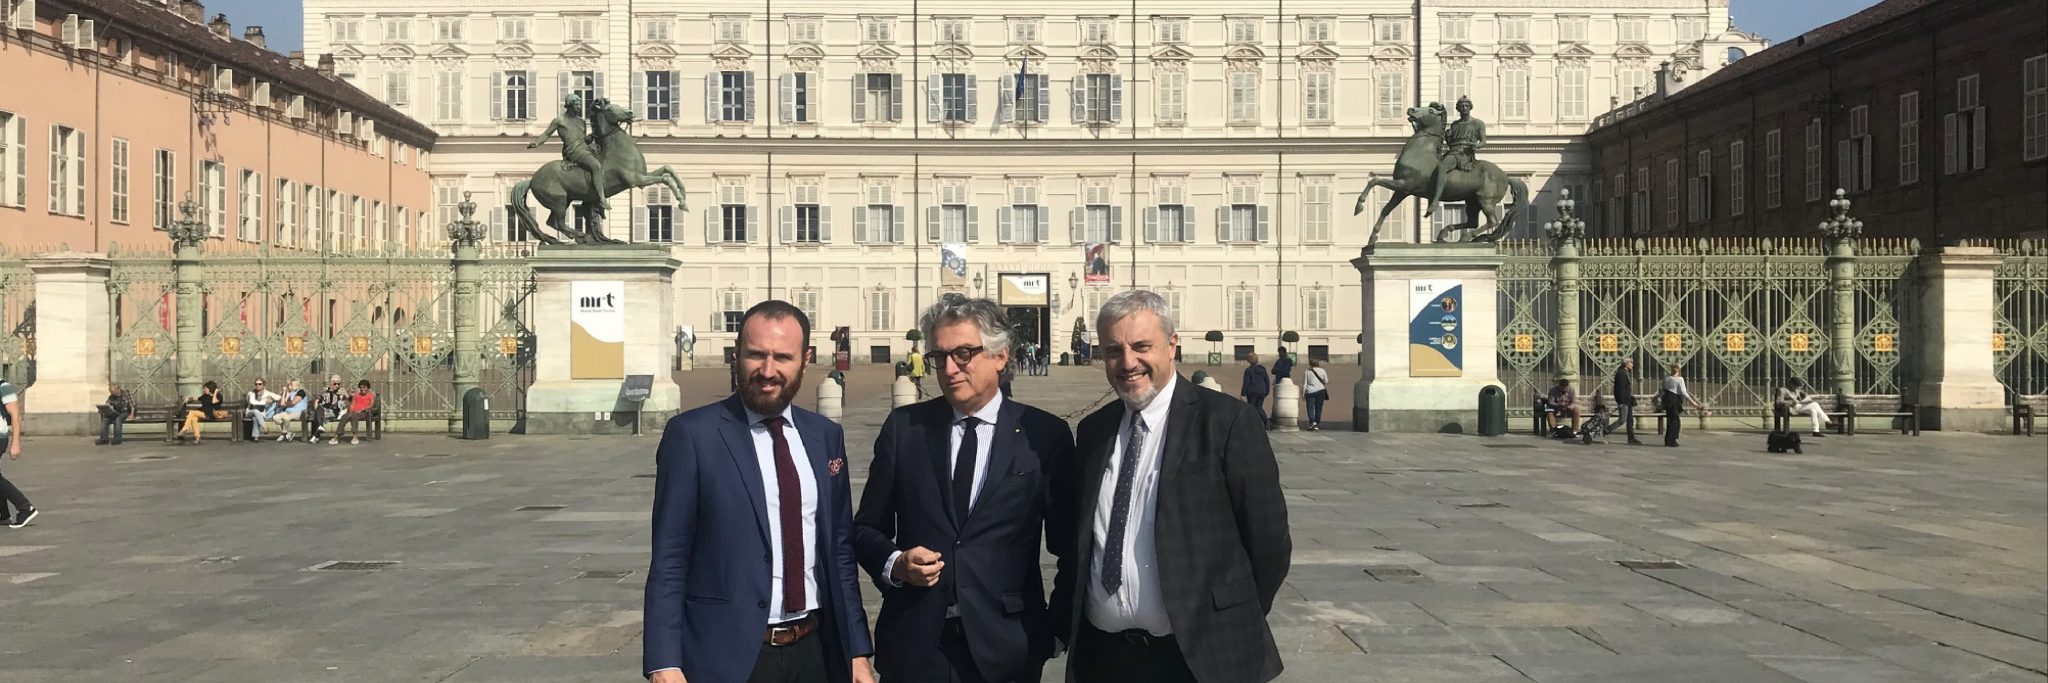 Tre uomini uno accanto all'altro in posa in Piazza Castello a Torino